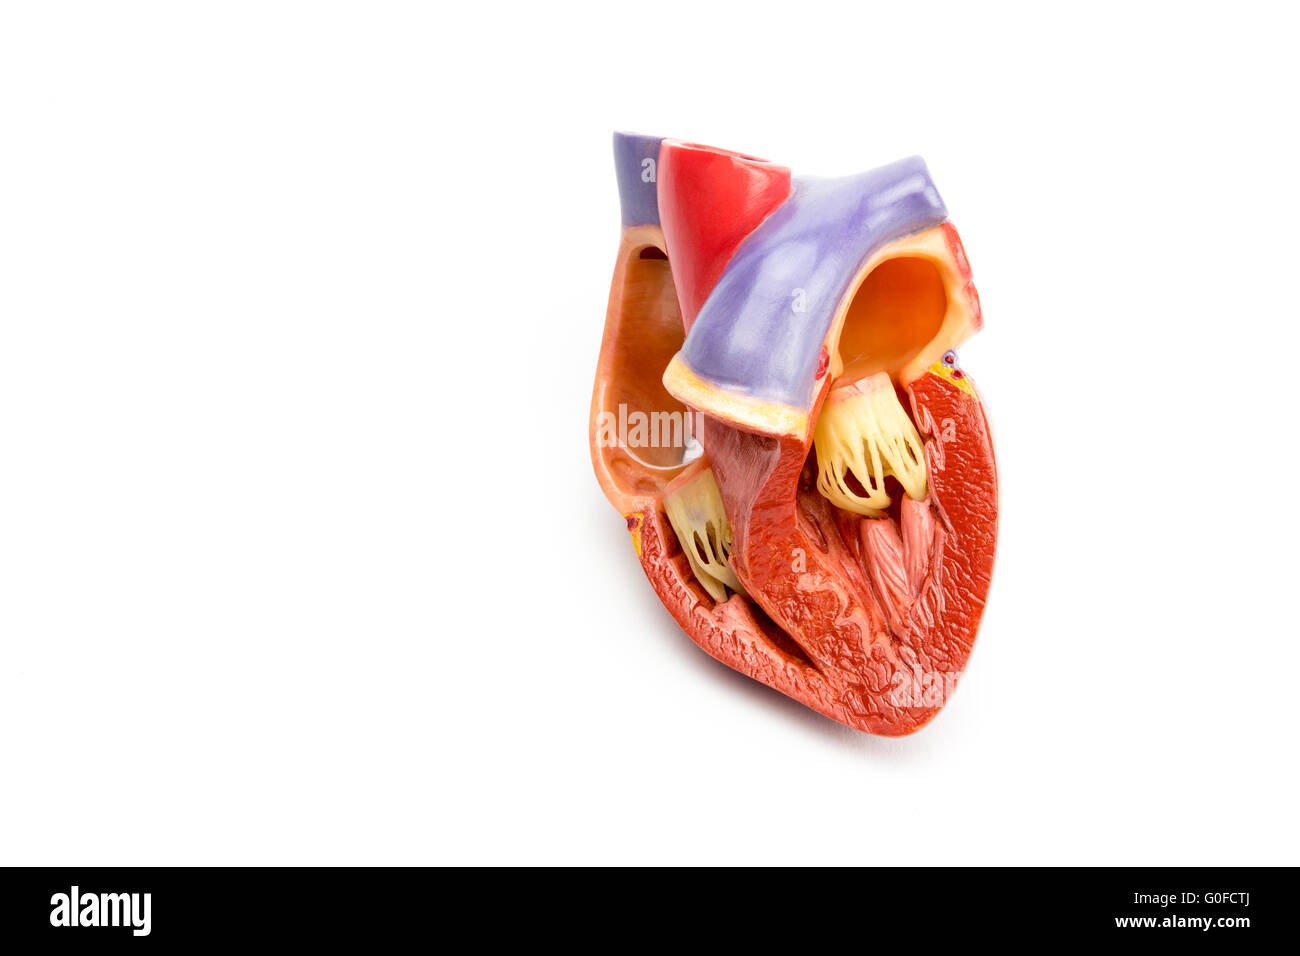 Modello di aprire il cuore umano isolato su sfondo bianco Foto Stock